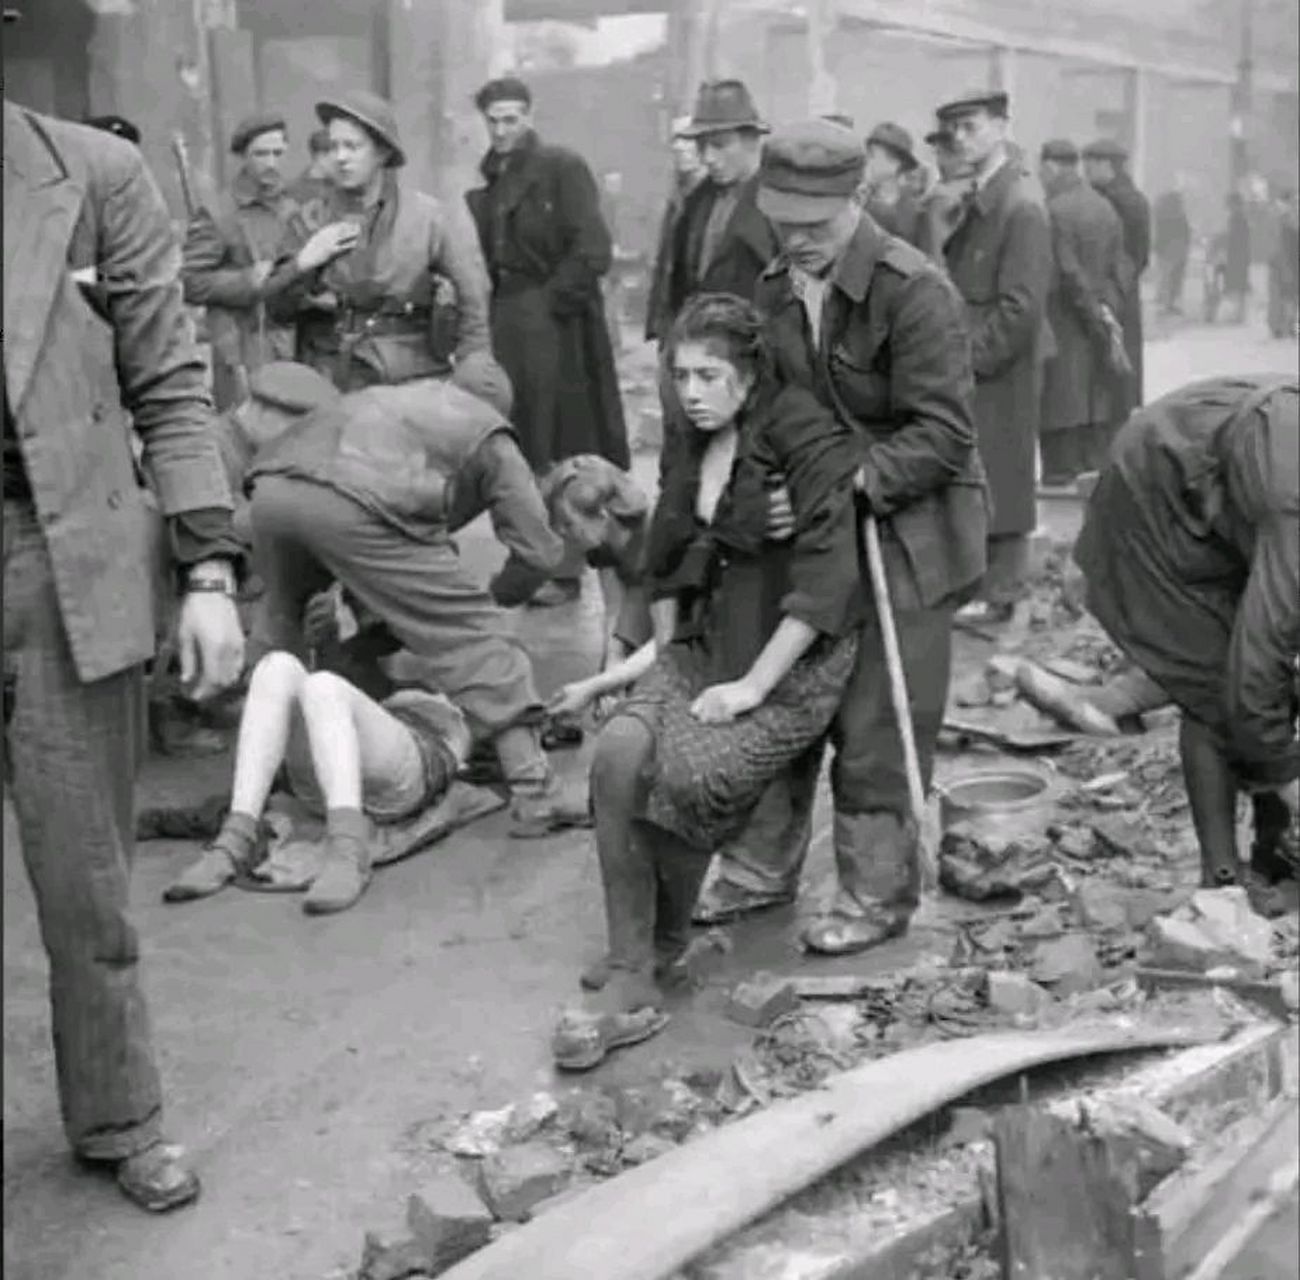 1945年4月30日,苏联红军攻占柏林,疲惫的战士们坐在地上休息